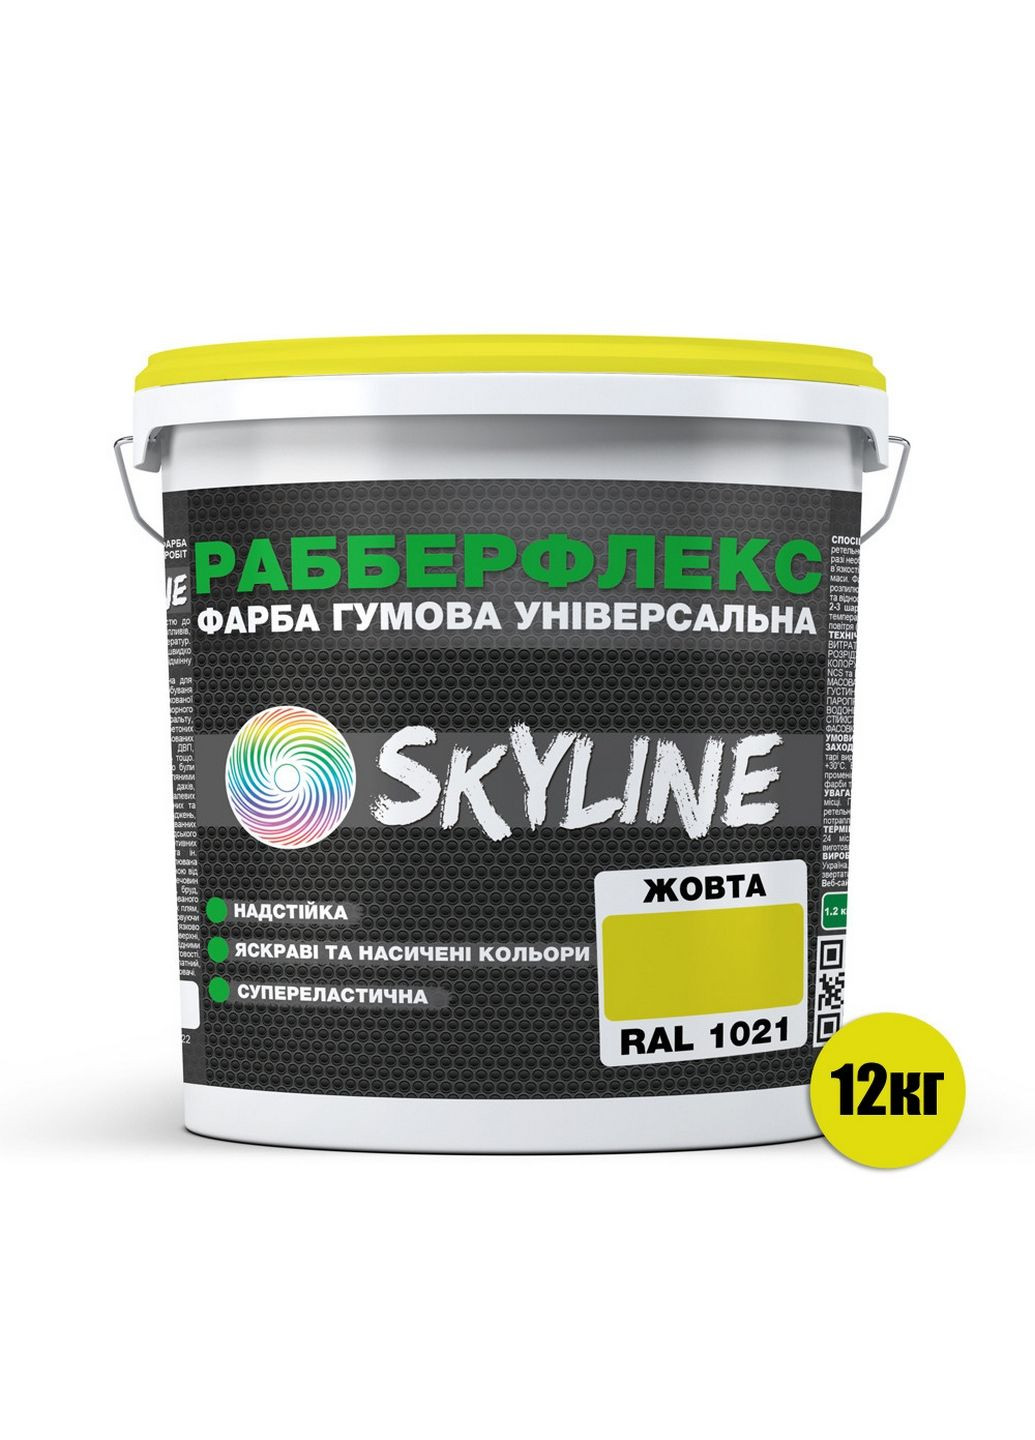 Надстійка фарба гумова супереластична «РабберФлекс» 12 кг SkyLine (283325963)